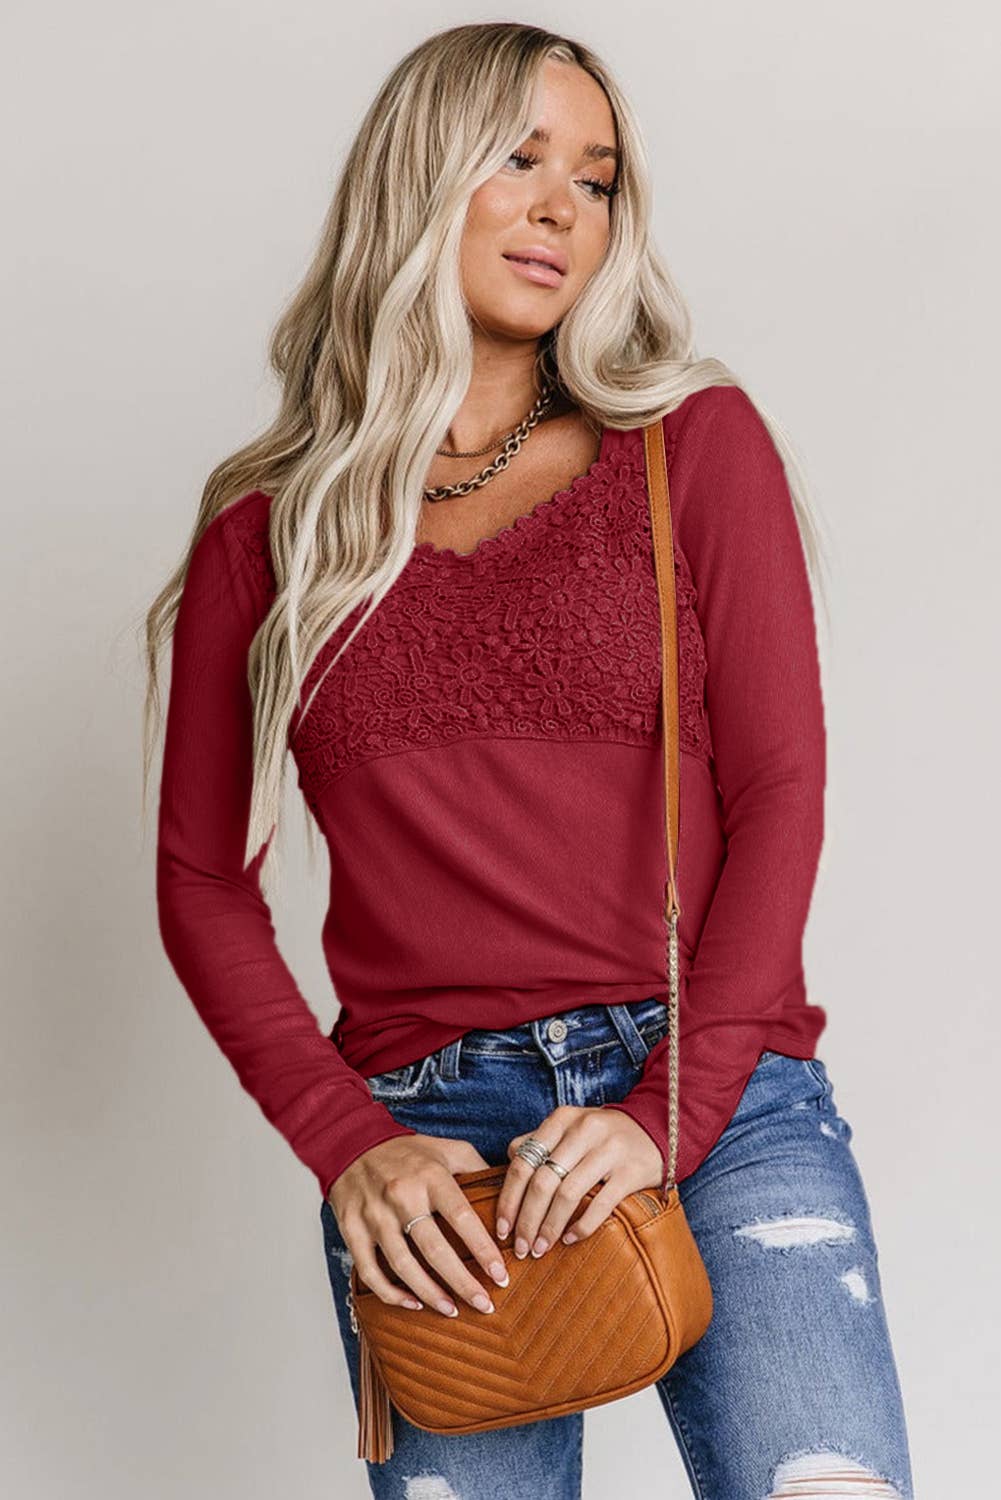 Lovesoft - Lace Crochet V Neck Long Sleeve Top